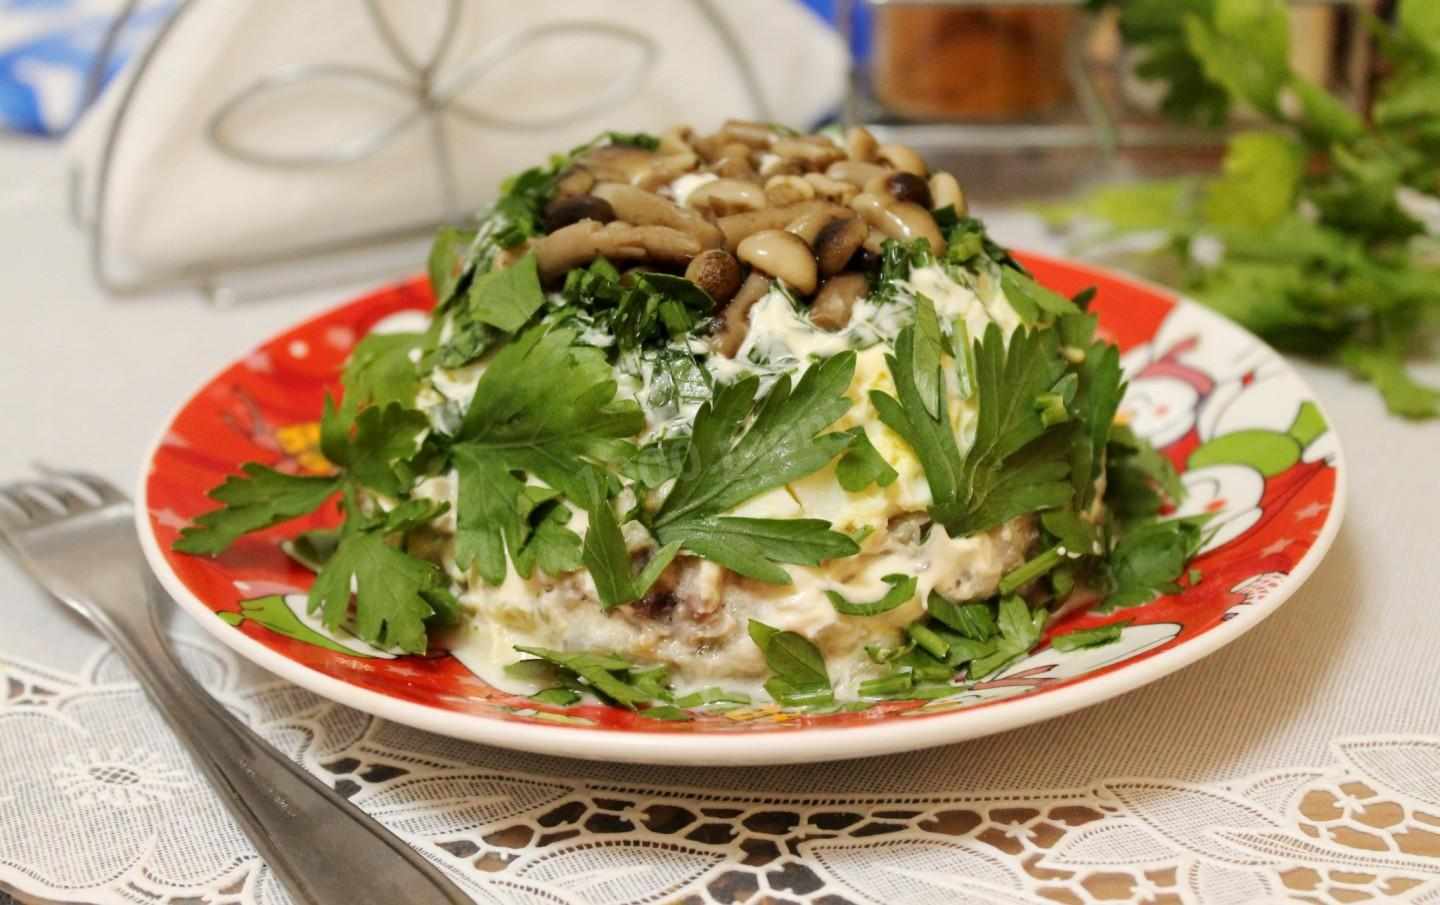 салат на скорую руку с жареными опятами, курицей и овощами